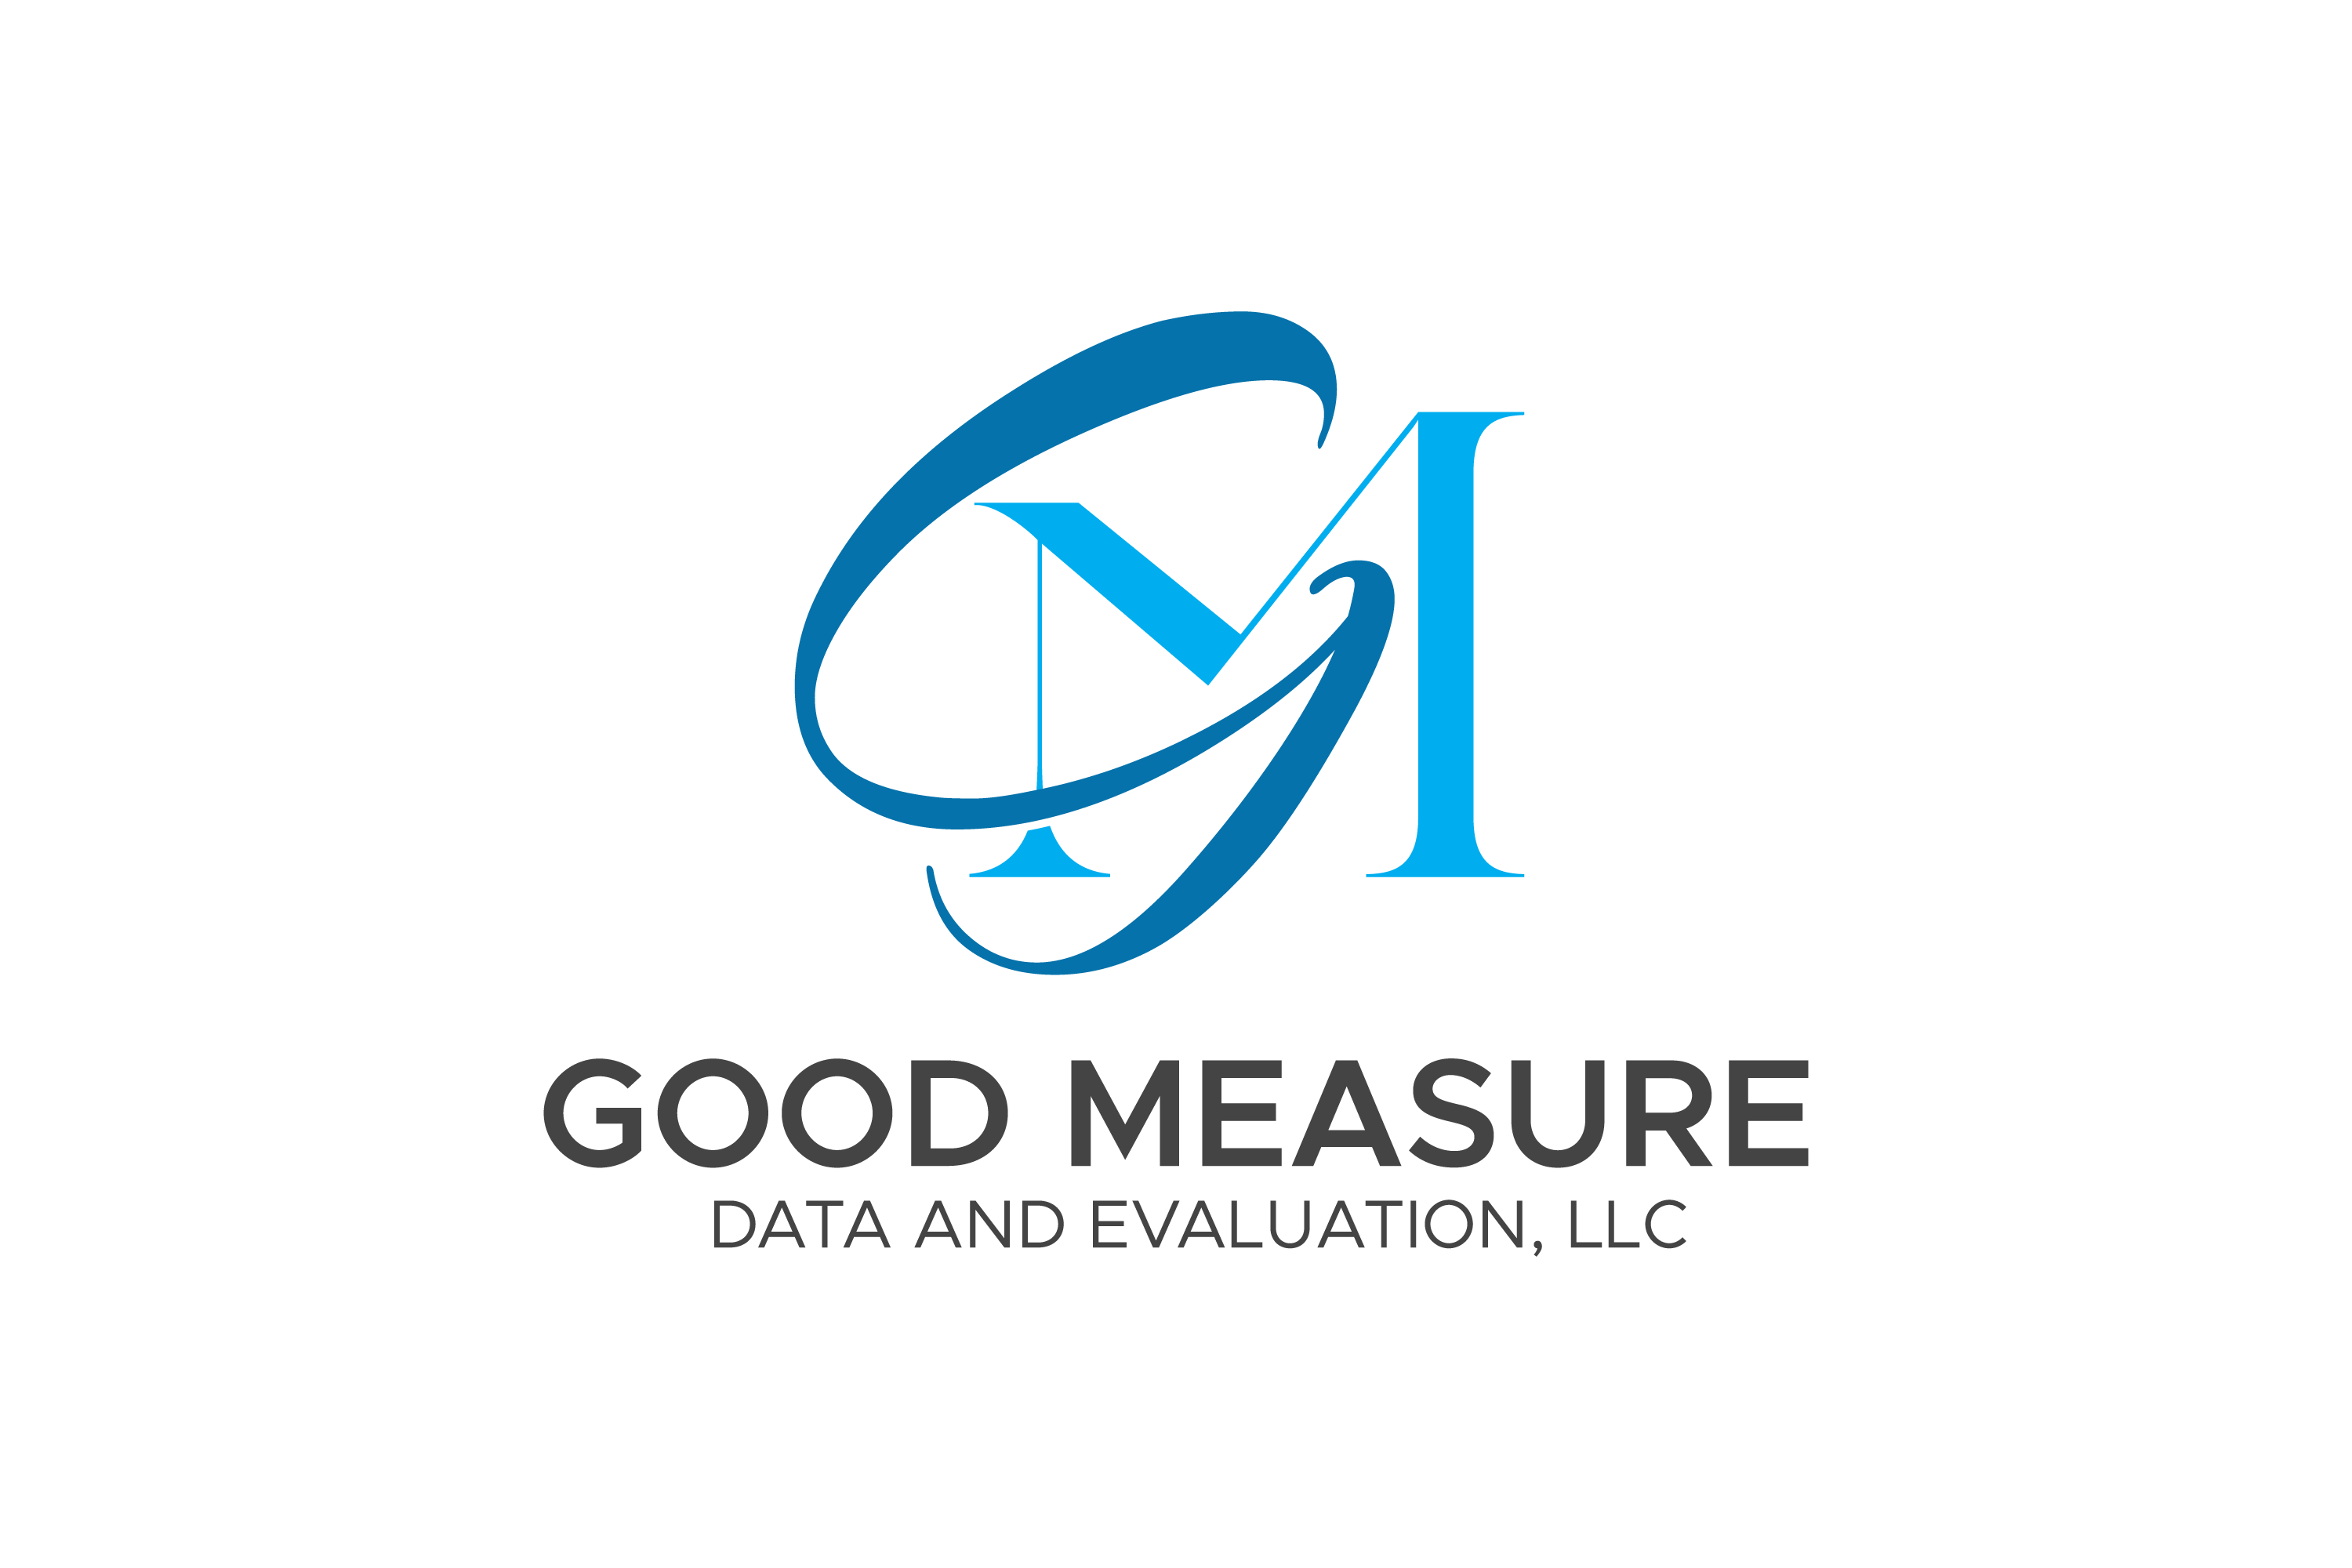 Good Measure Data